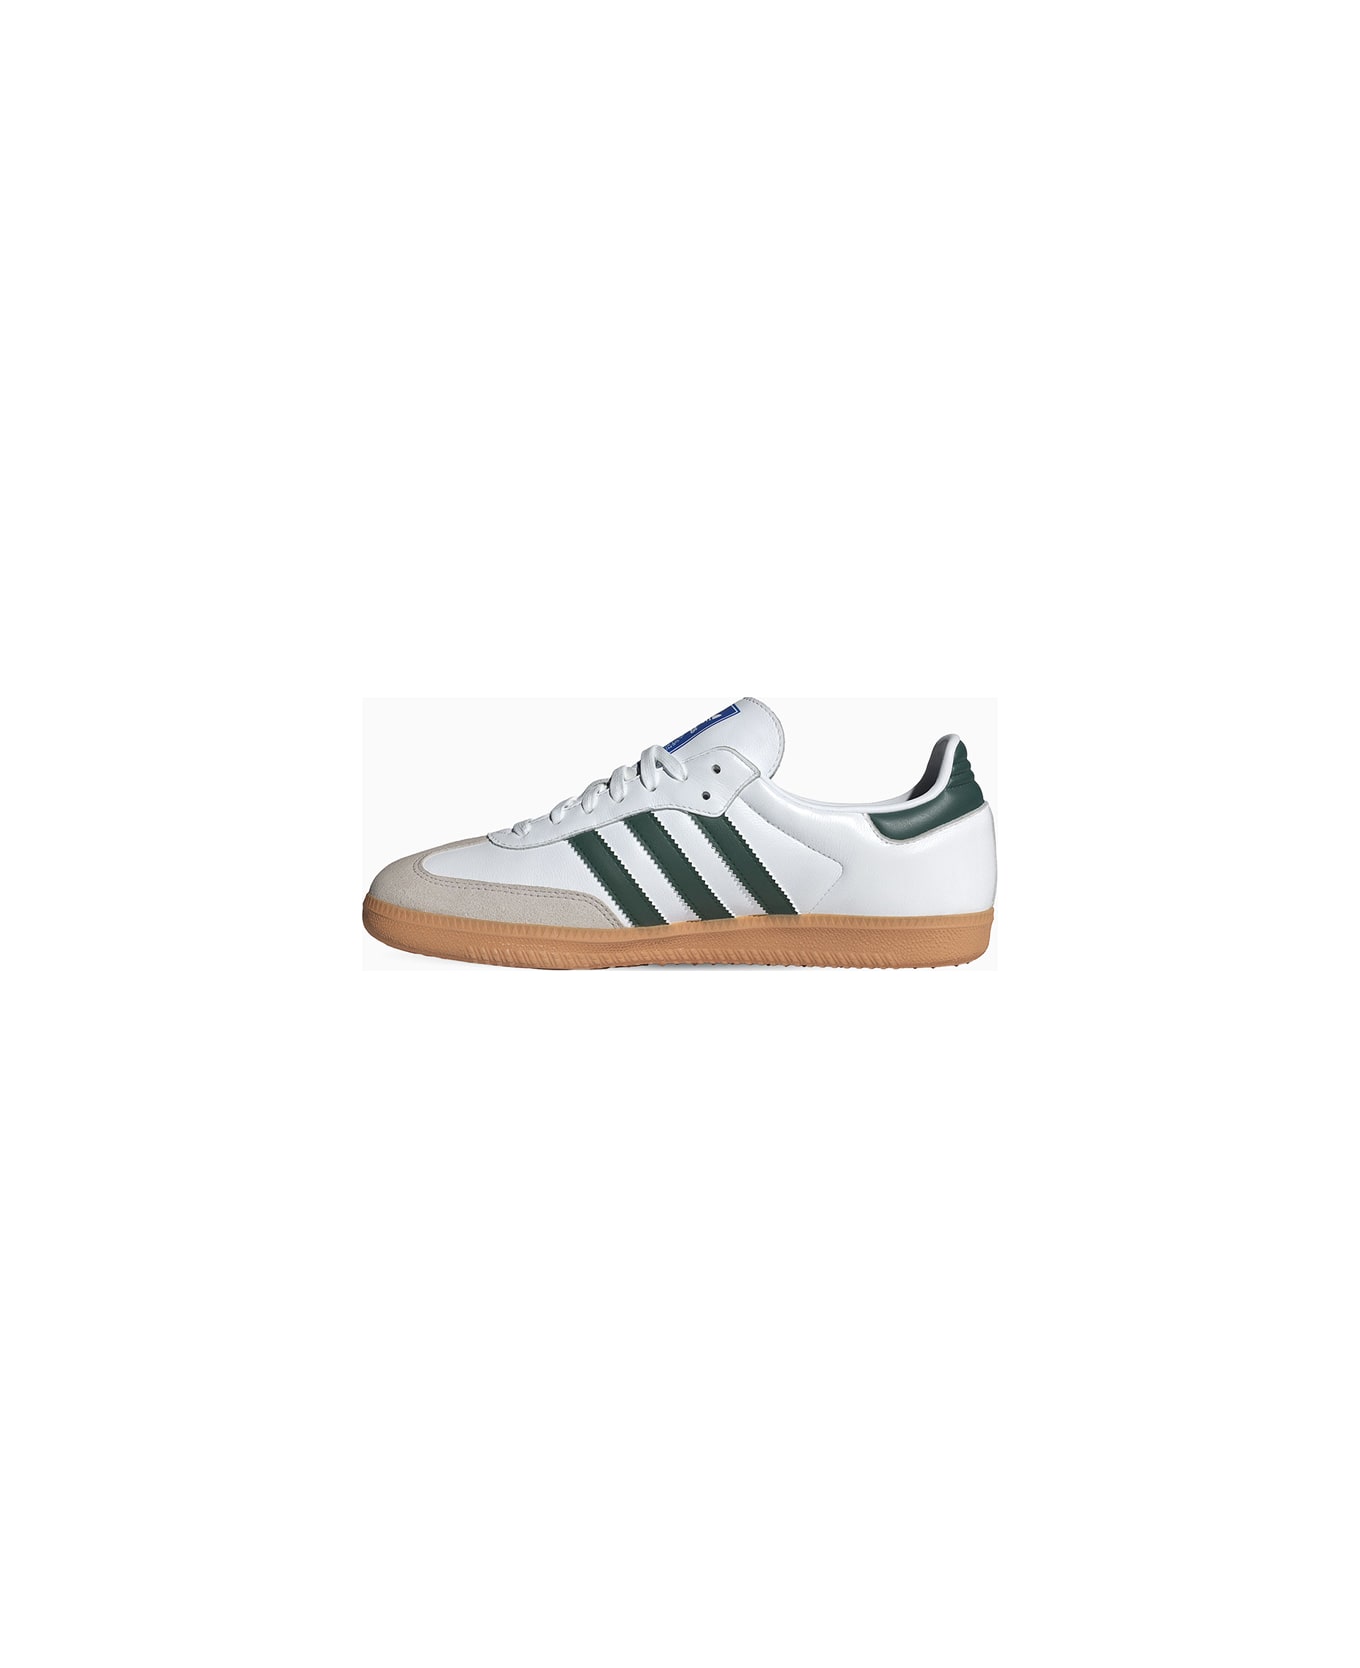 Adidas Originals Samba Og Sneakers Ie3437 - Green